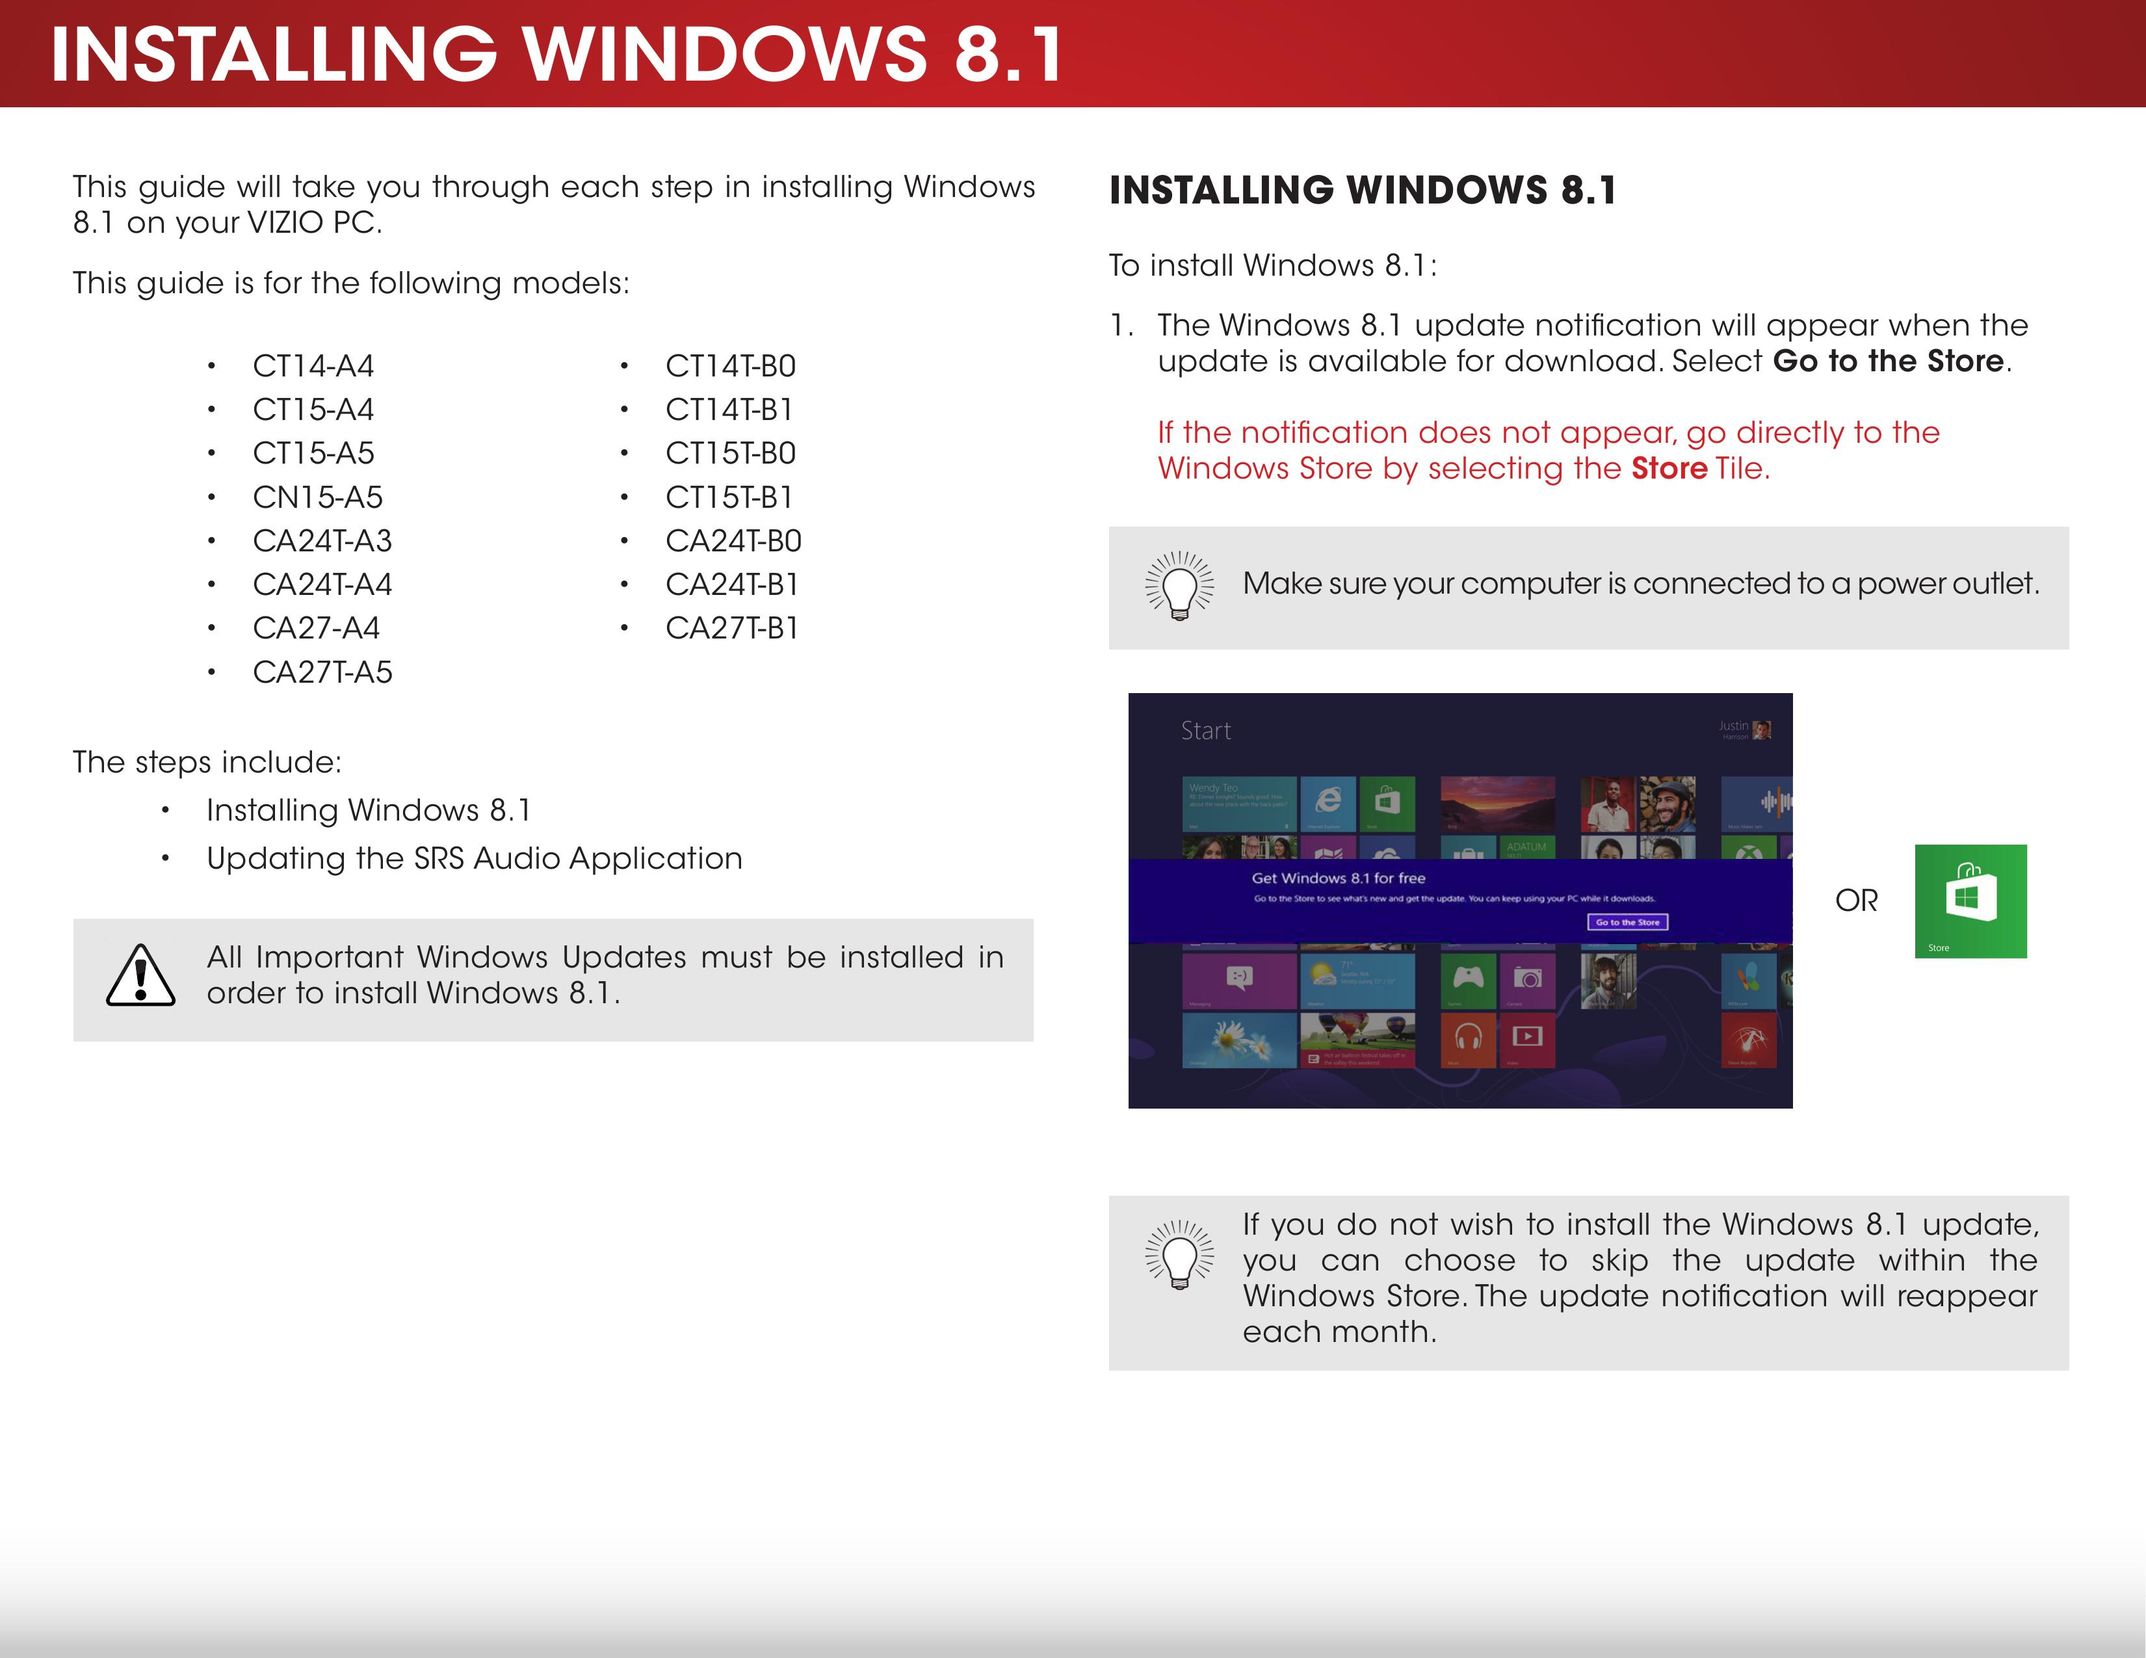 Microsoft CT14T-B1 Window User Manual